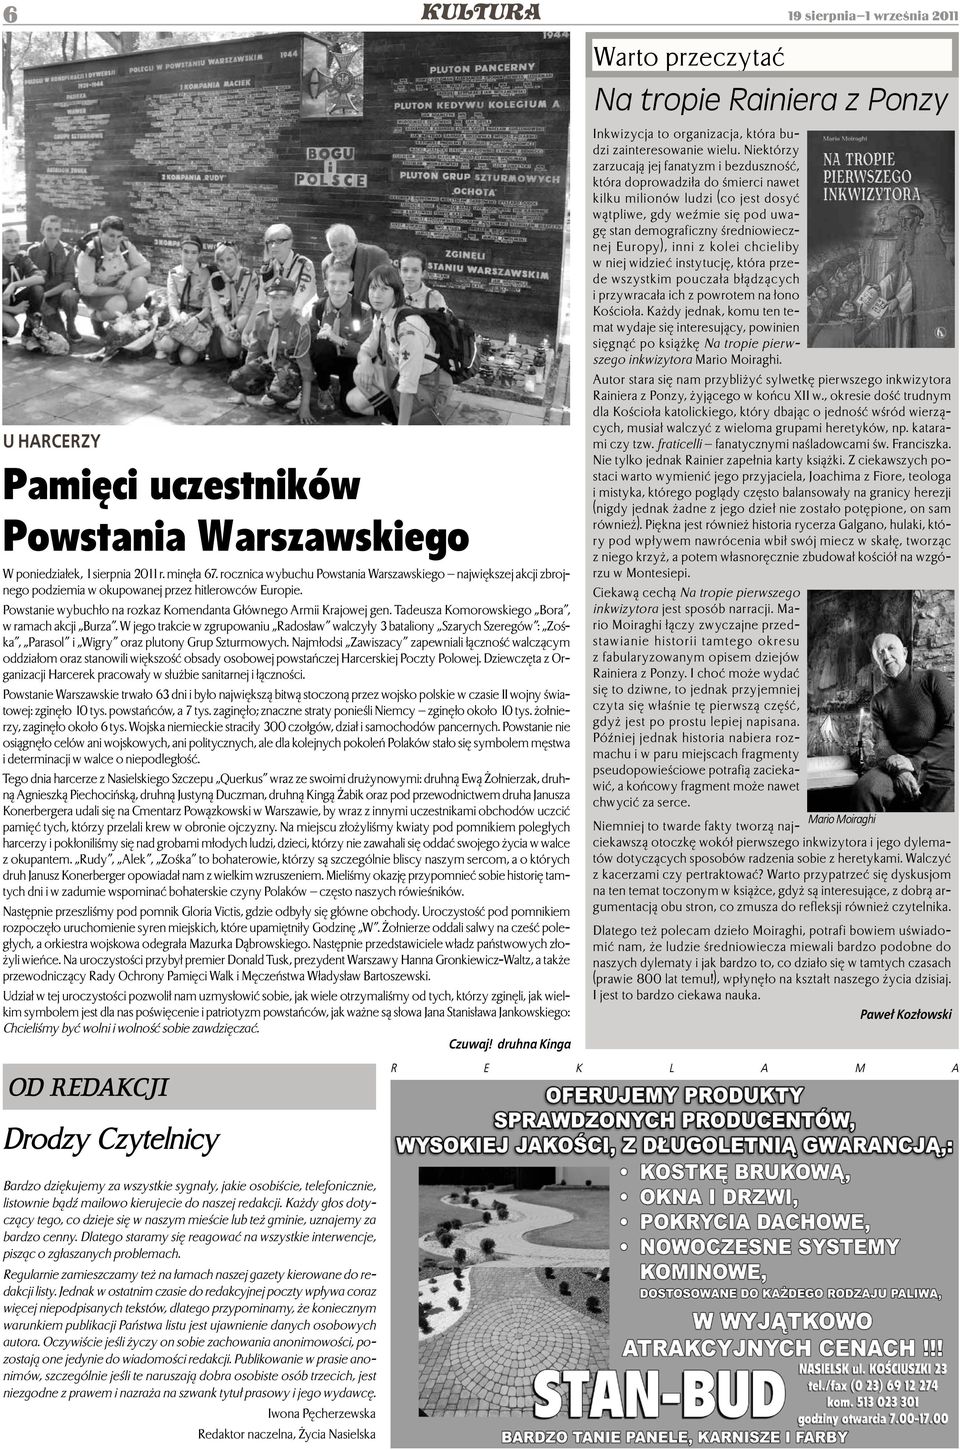 Tadeusza Komorowskiego Bora, w ramach akcji Burza. W jego trakcie w zgrupowaniu Radosław walczyły 3 bataliony Szarych Szeregów : Zośka, Parasol i Wigry oraz plutony Grup Szturmowych.